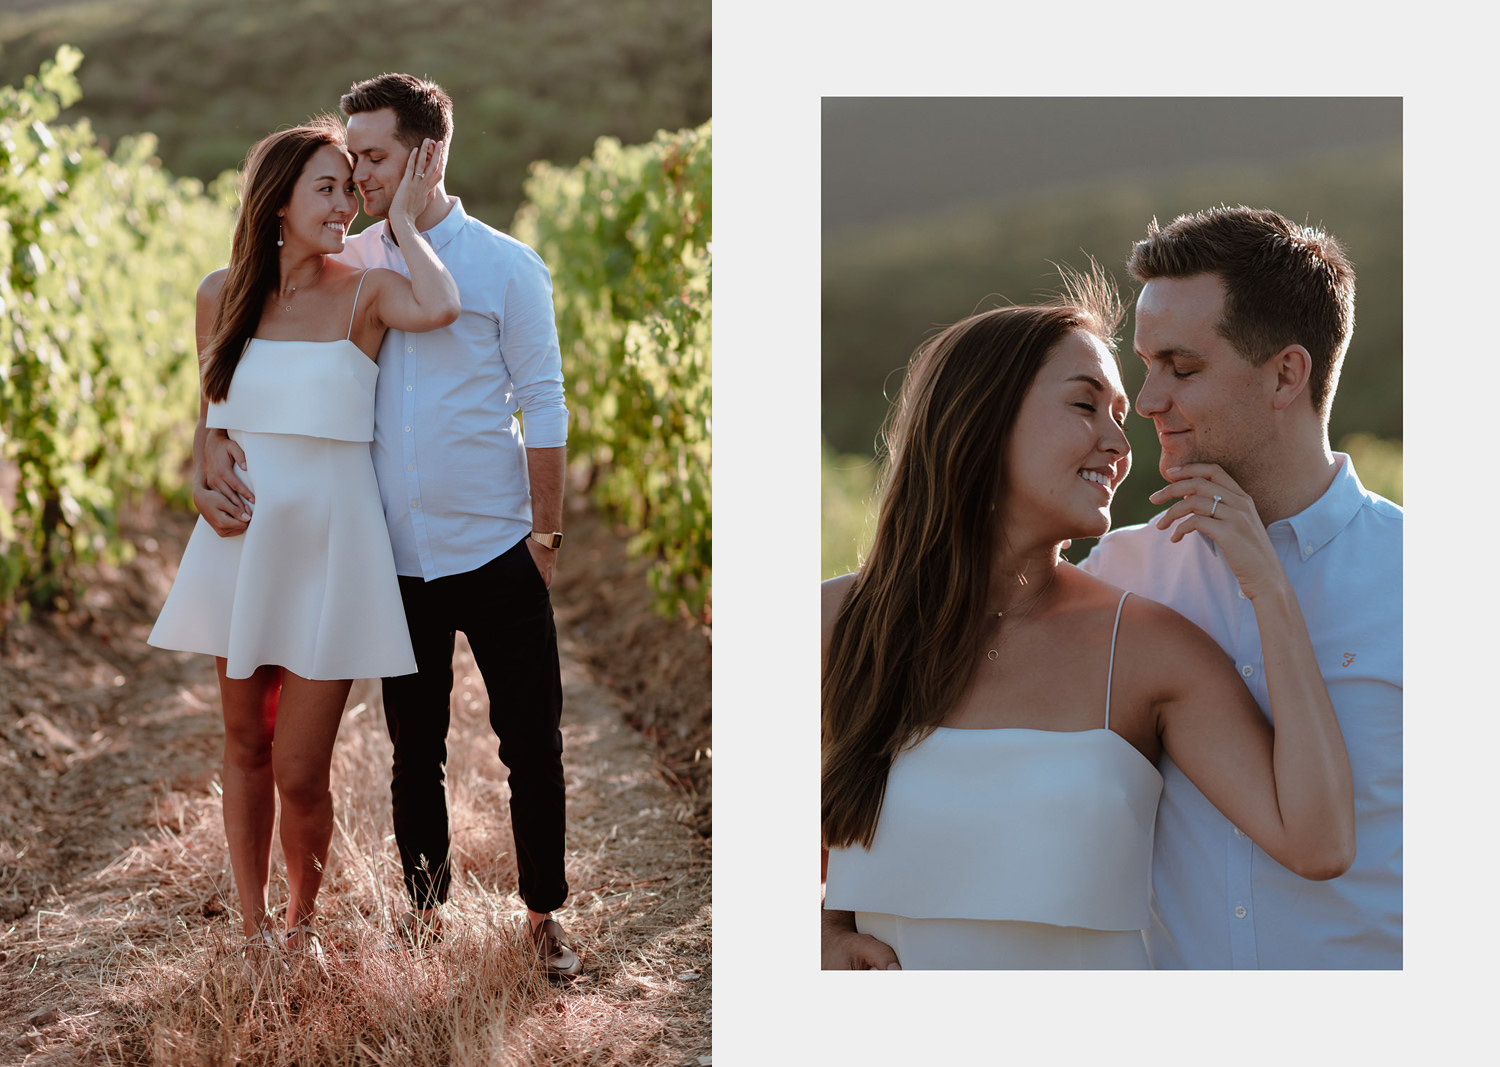 engagement photographertuscany intimate sunset vineyard walk portrait